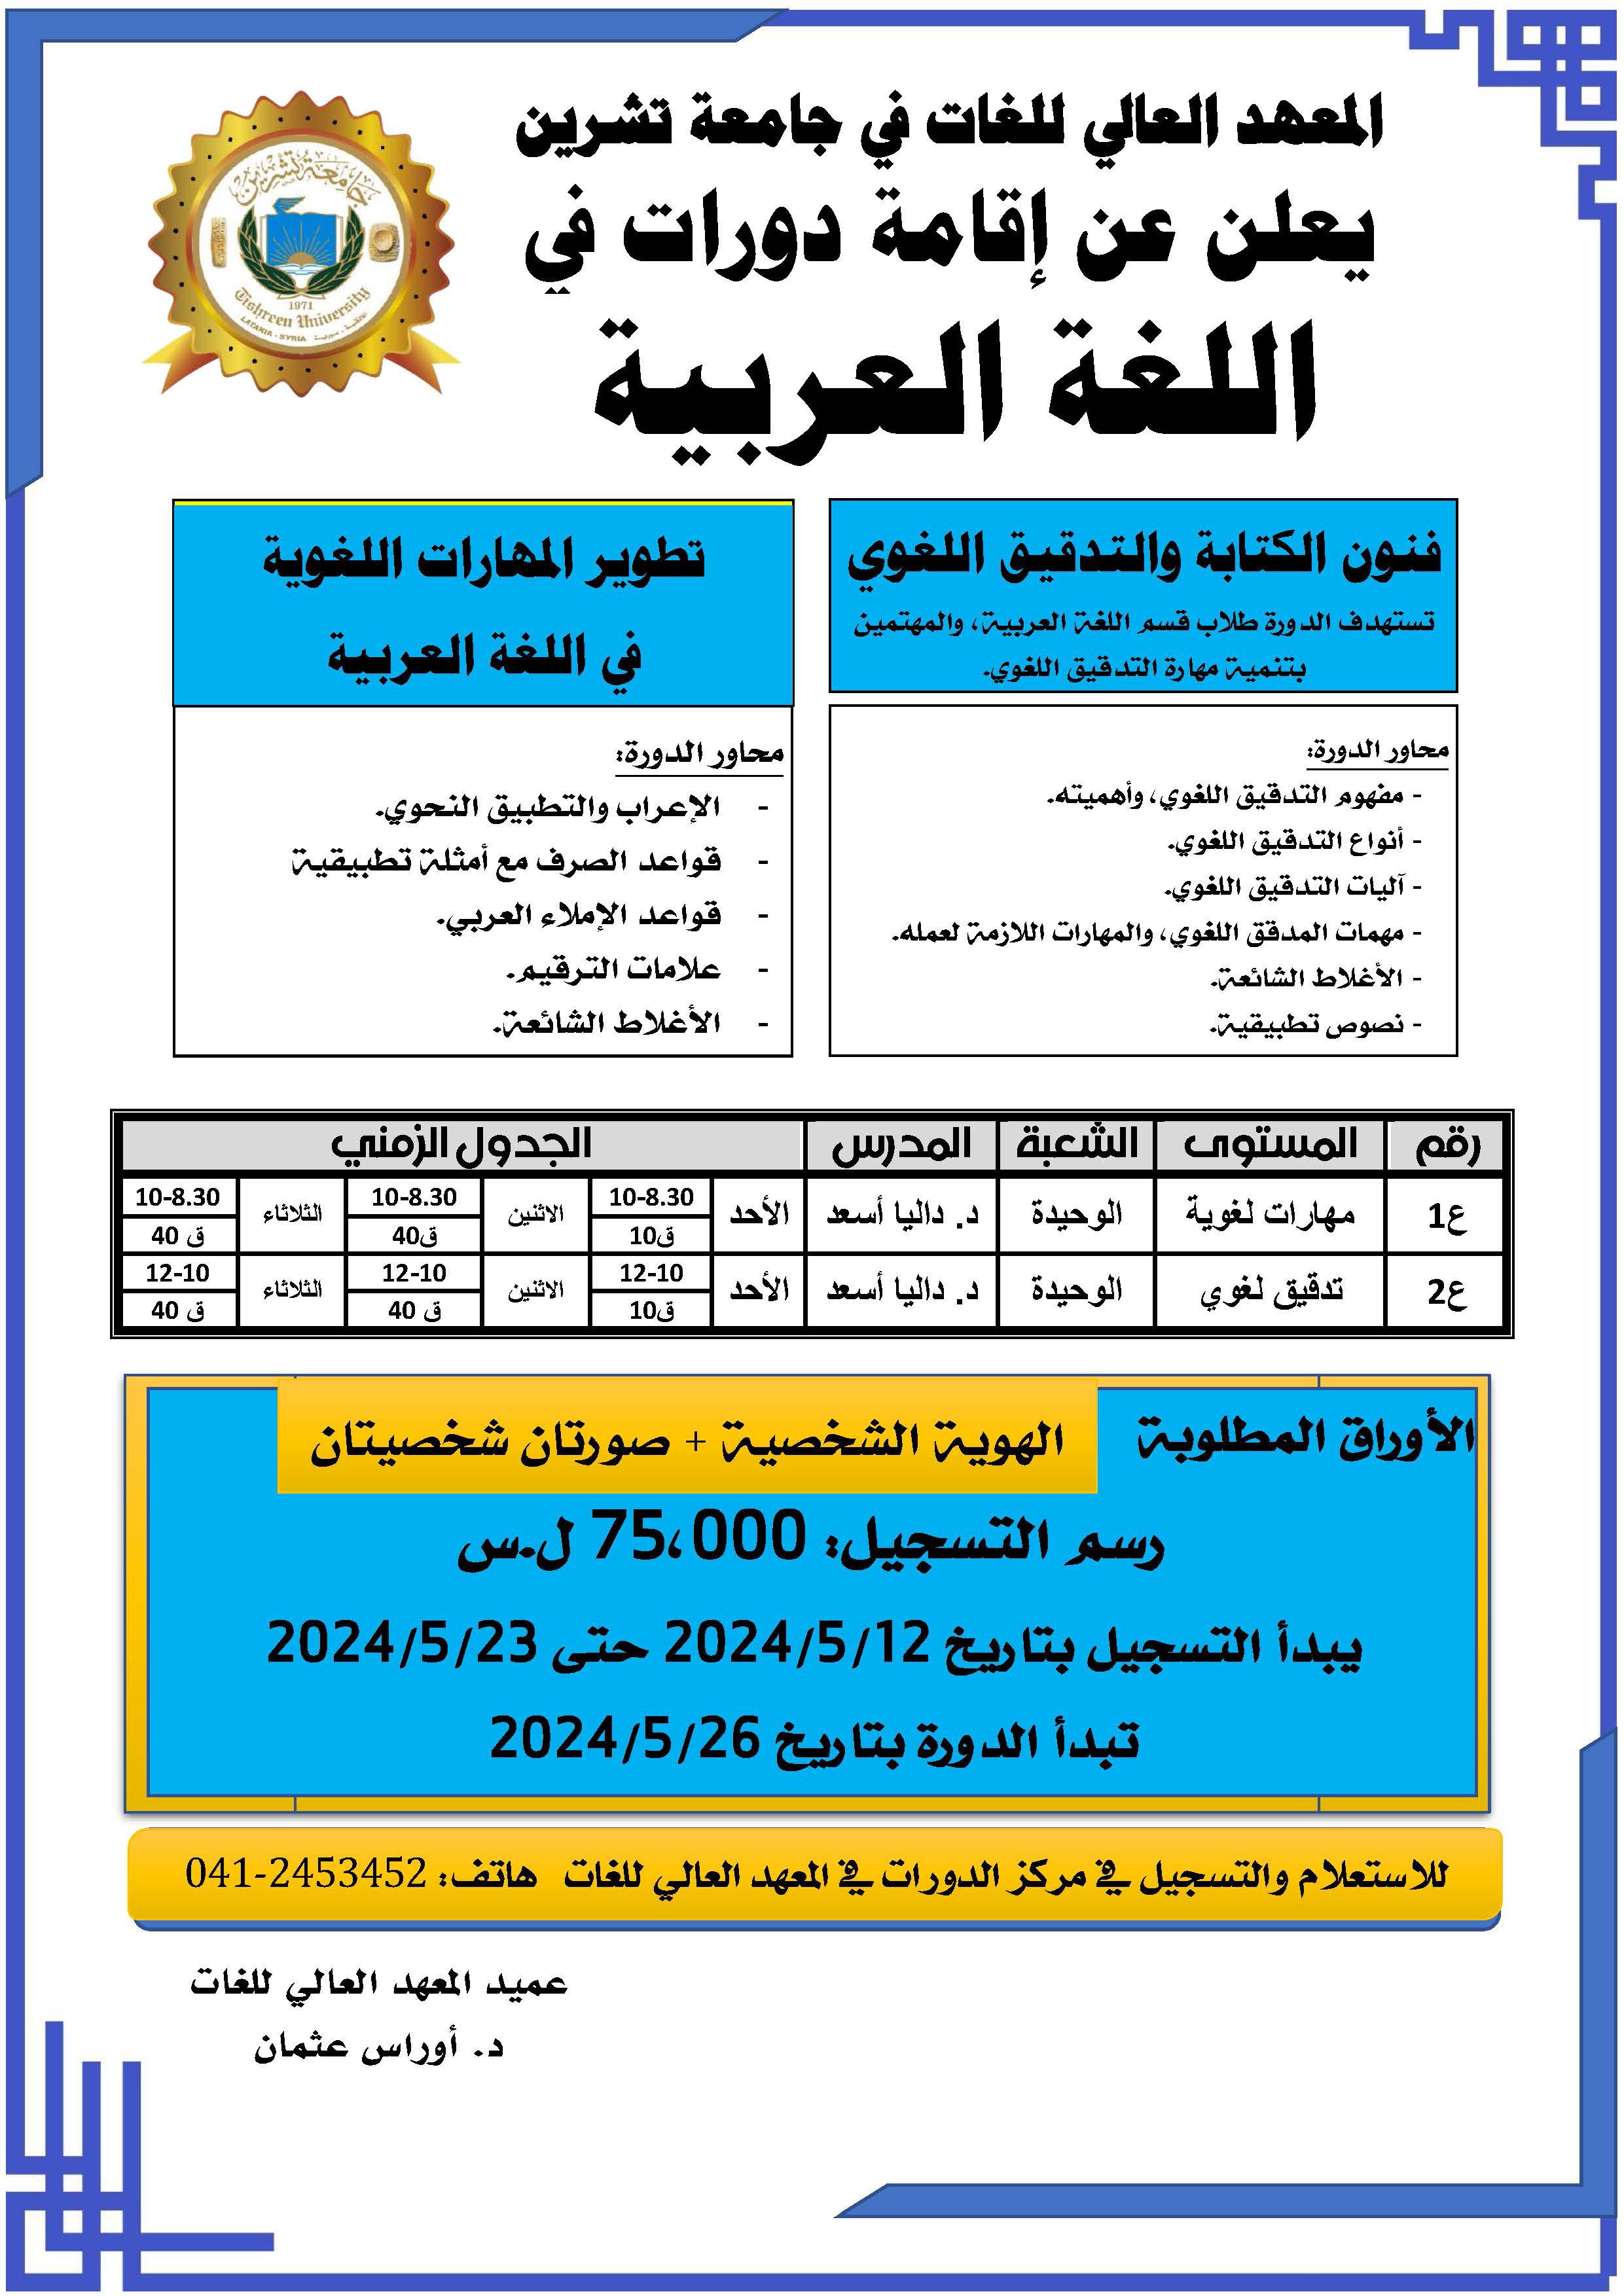 المعهد العالي للغات يعلن عن موعد التسجيل لدورات اللغة العربية التي ستبدأ بتاريخ 26-05-2024